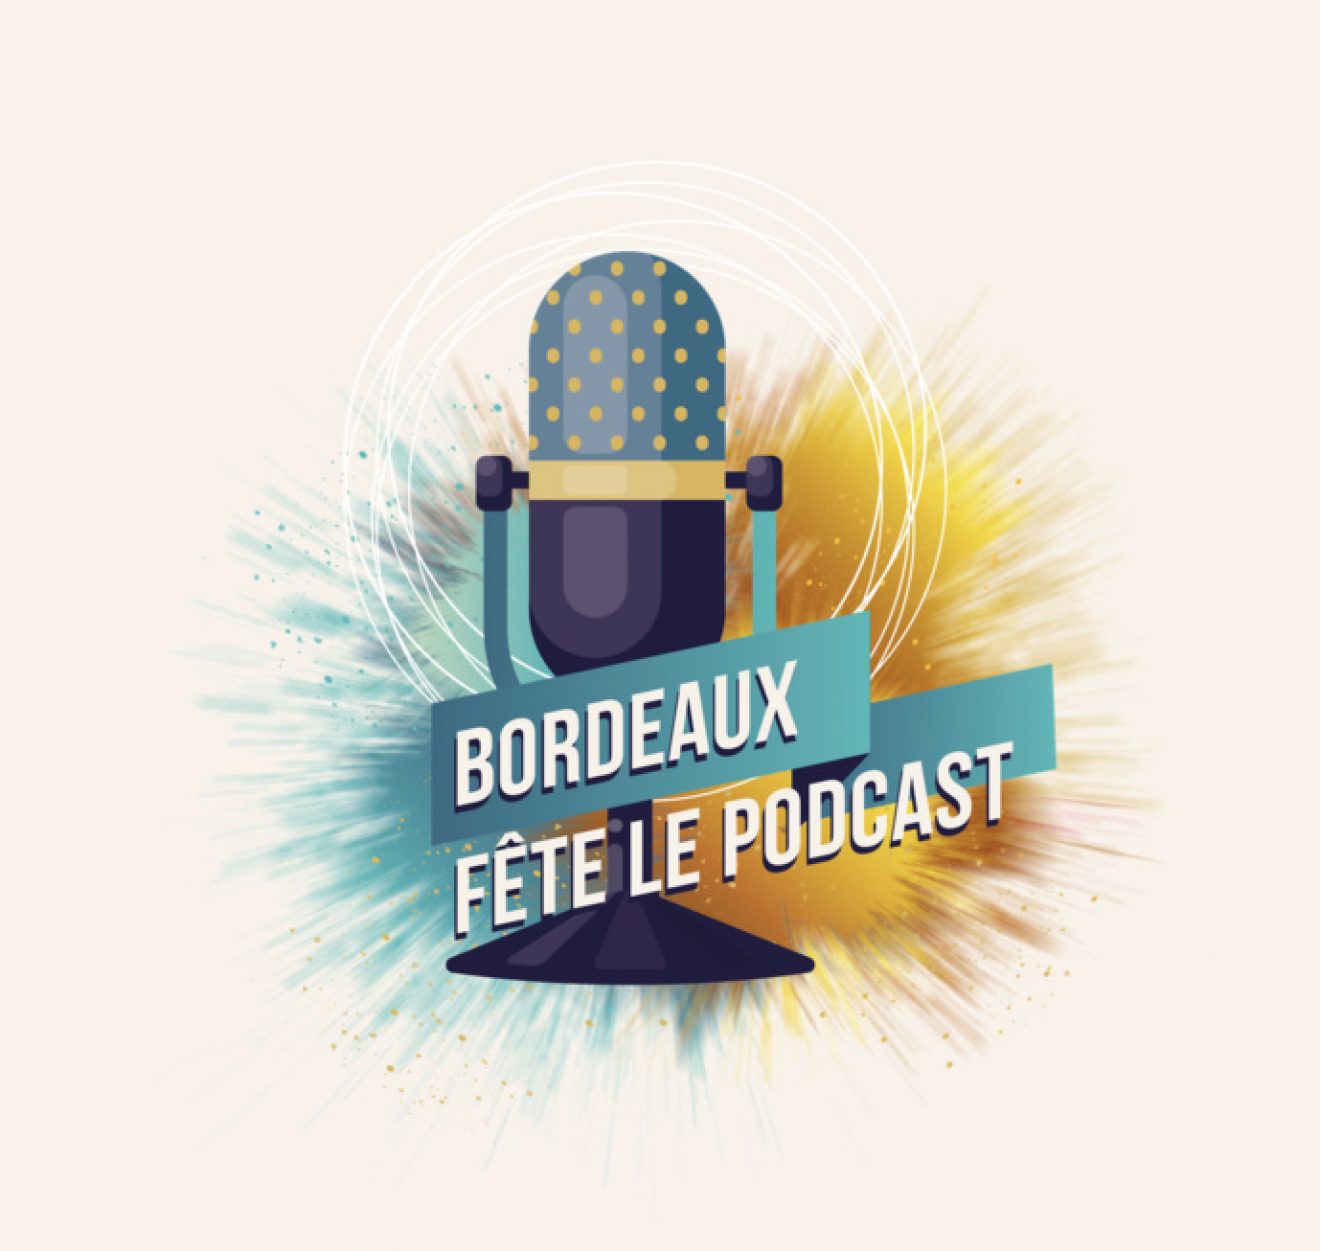 « Bordeaux fête le podcast » c’est demain. Voici ce qui vous attend !